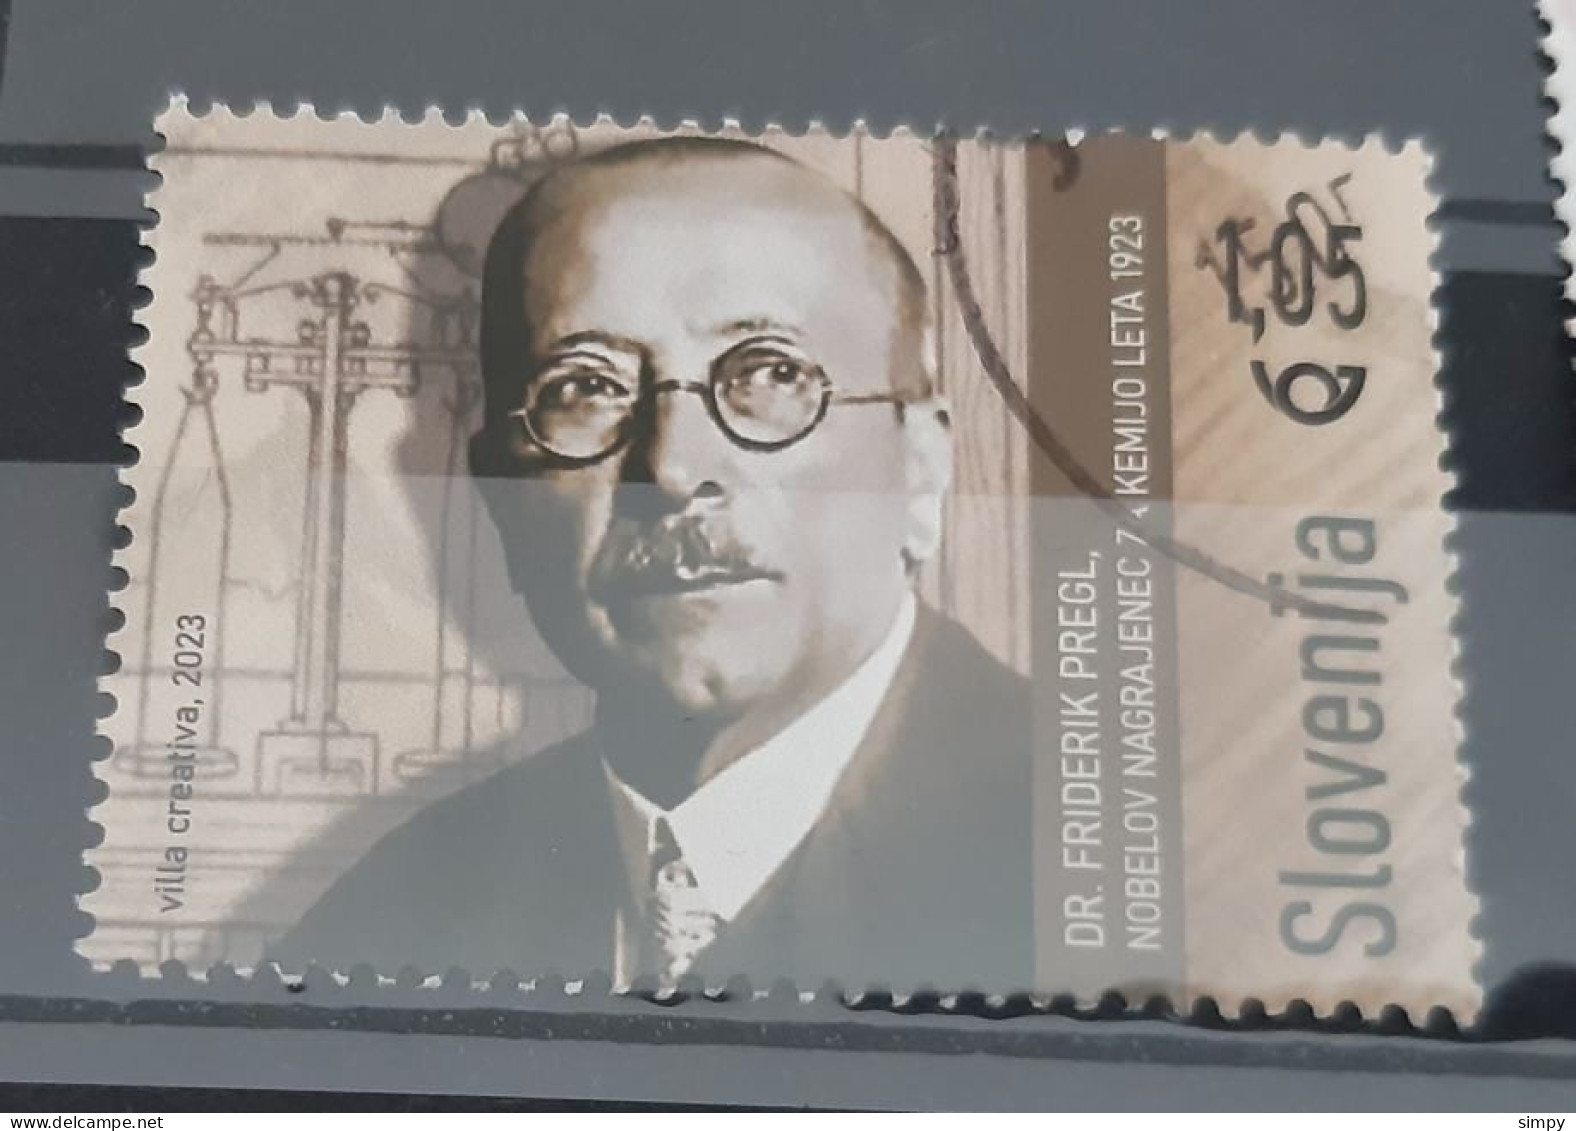 SLOVENIA 2023 Friderik Pregel Nobel Prize Michel 1563 Used Stamp - Eslovenia